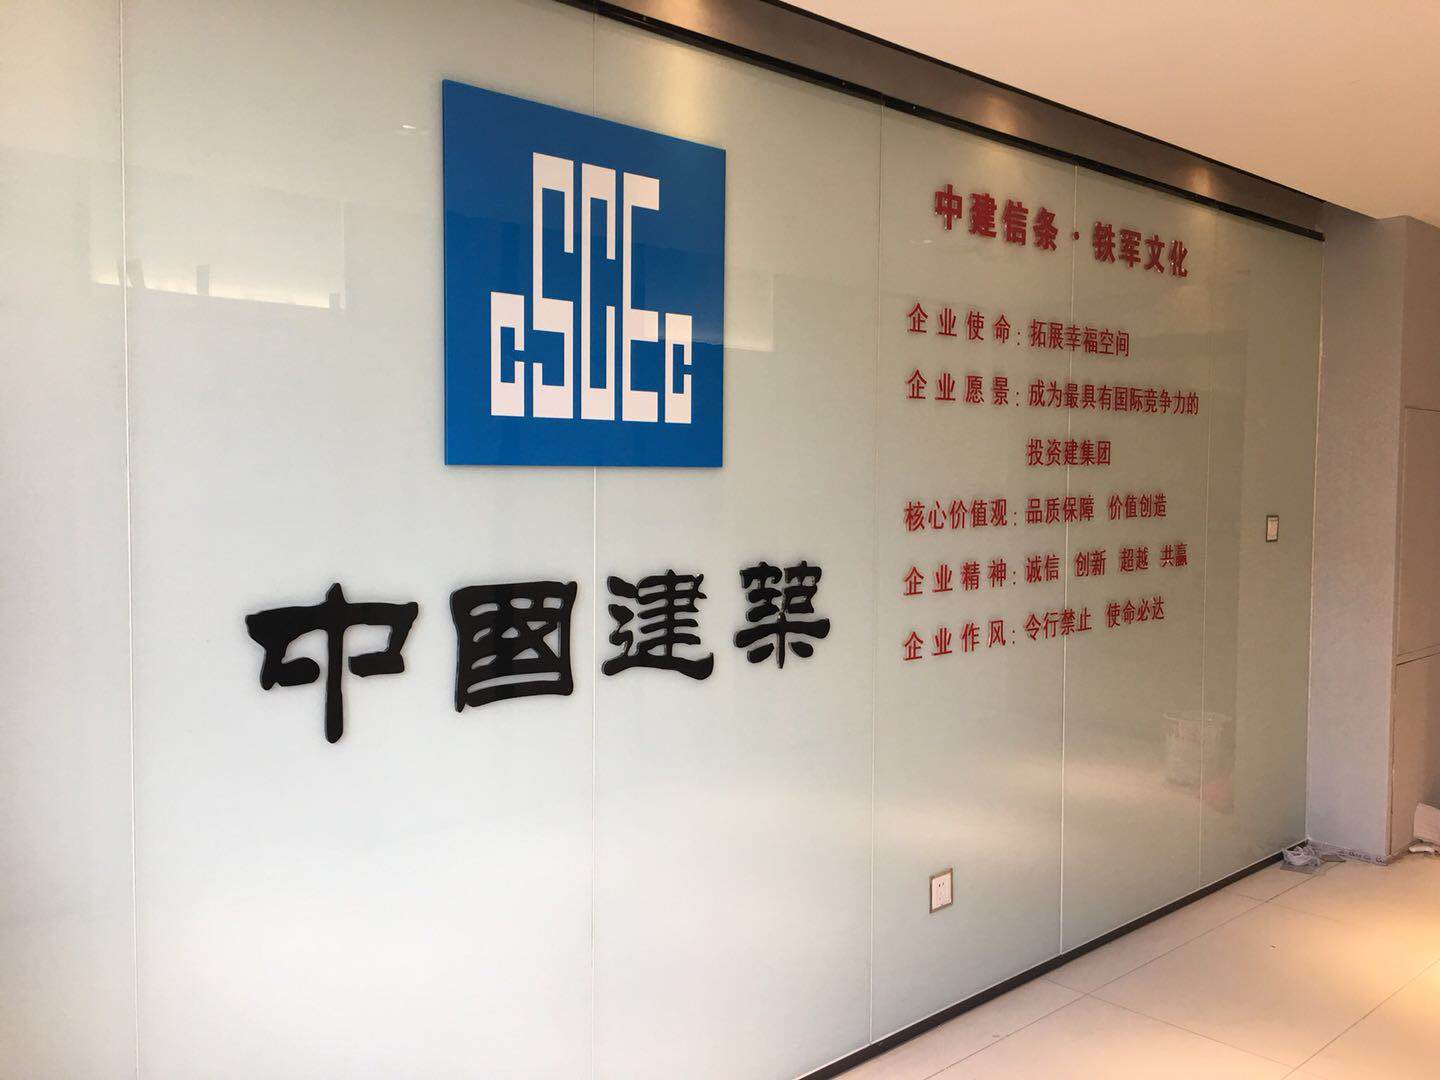 中国建筑第八工程局有限公司广州分公司办公室